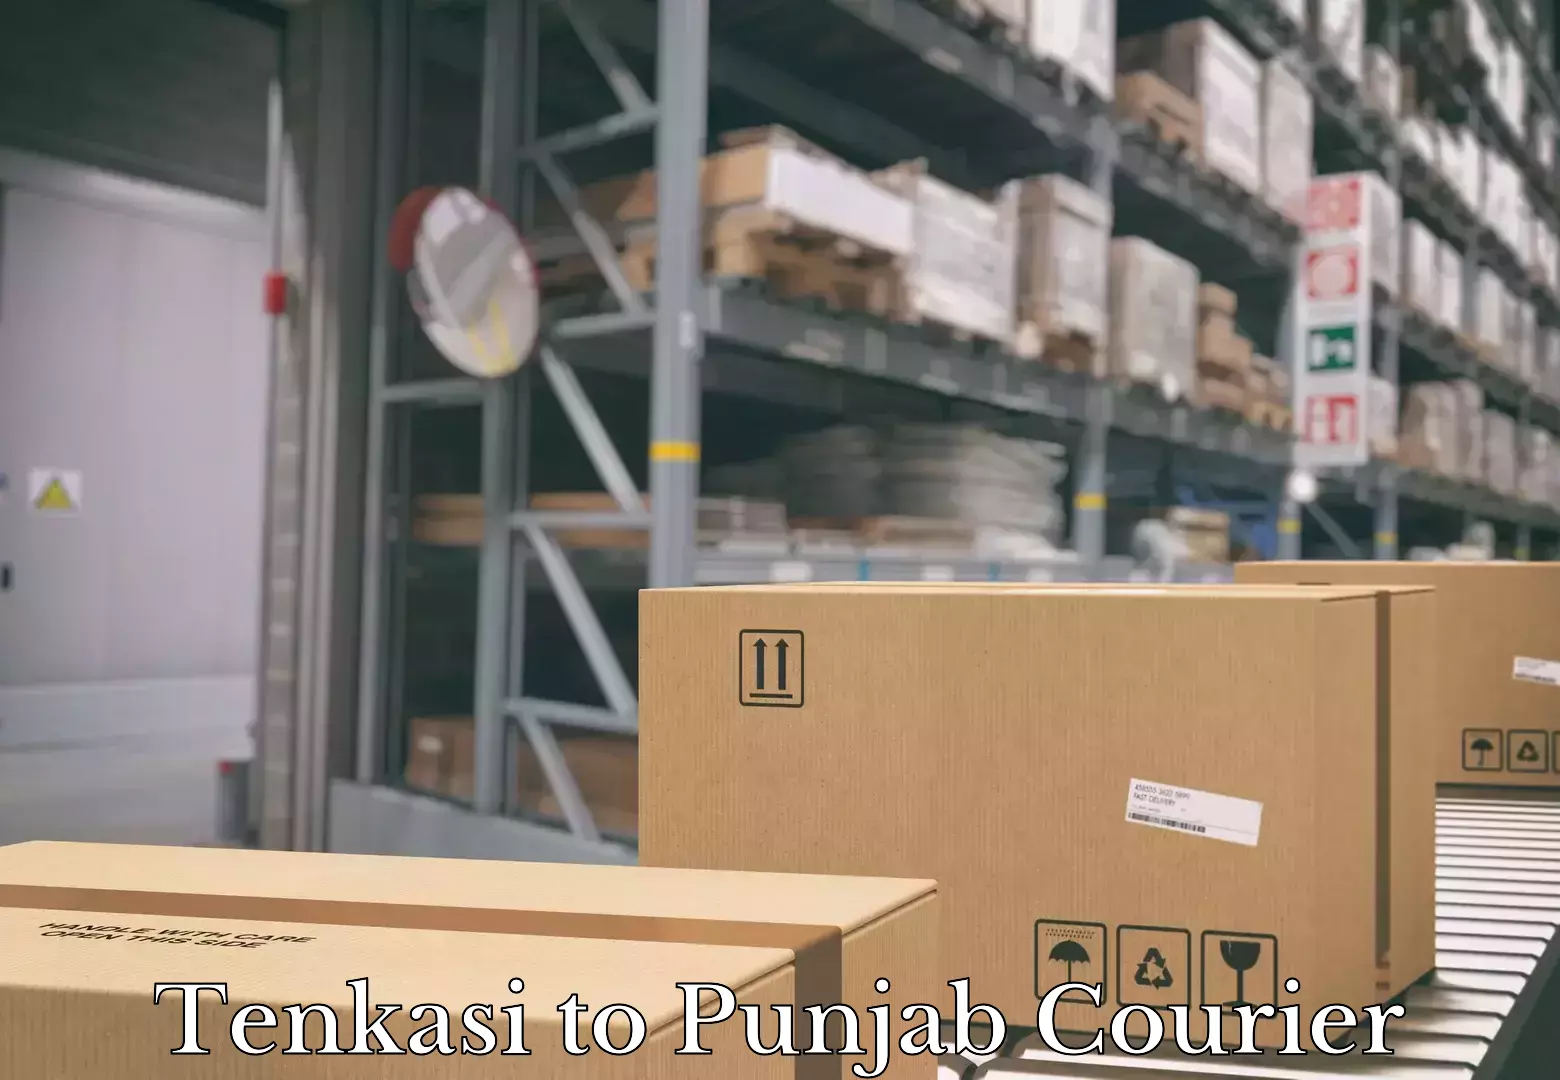 International courier networks Tenkasi to Punjab